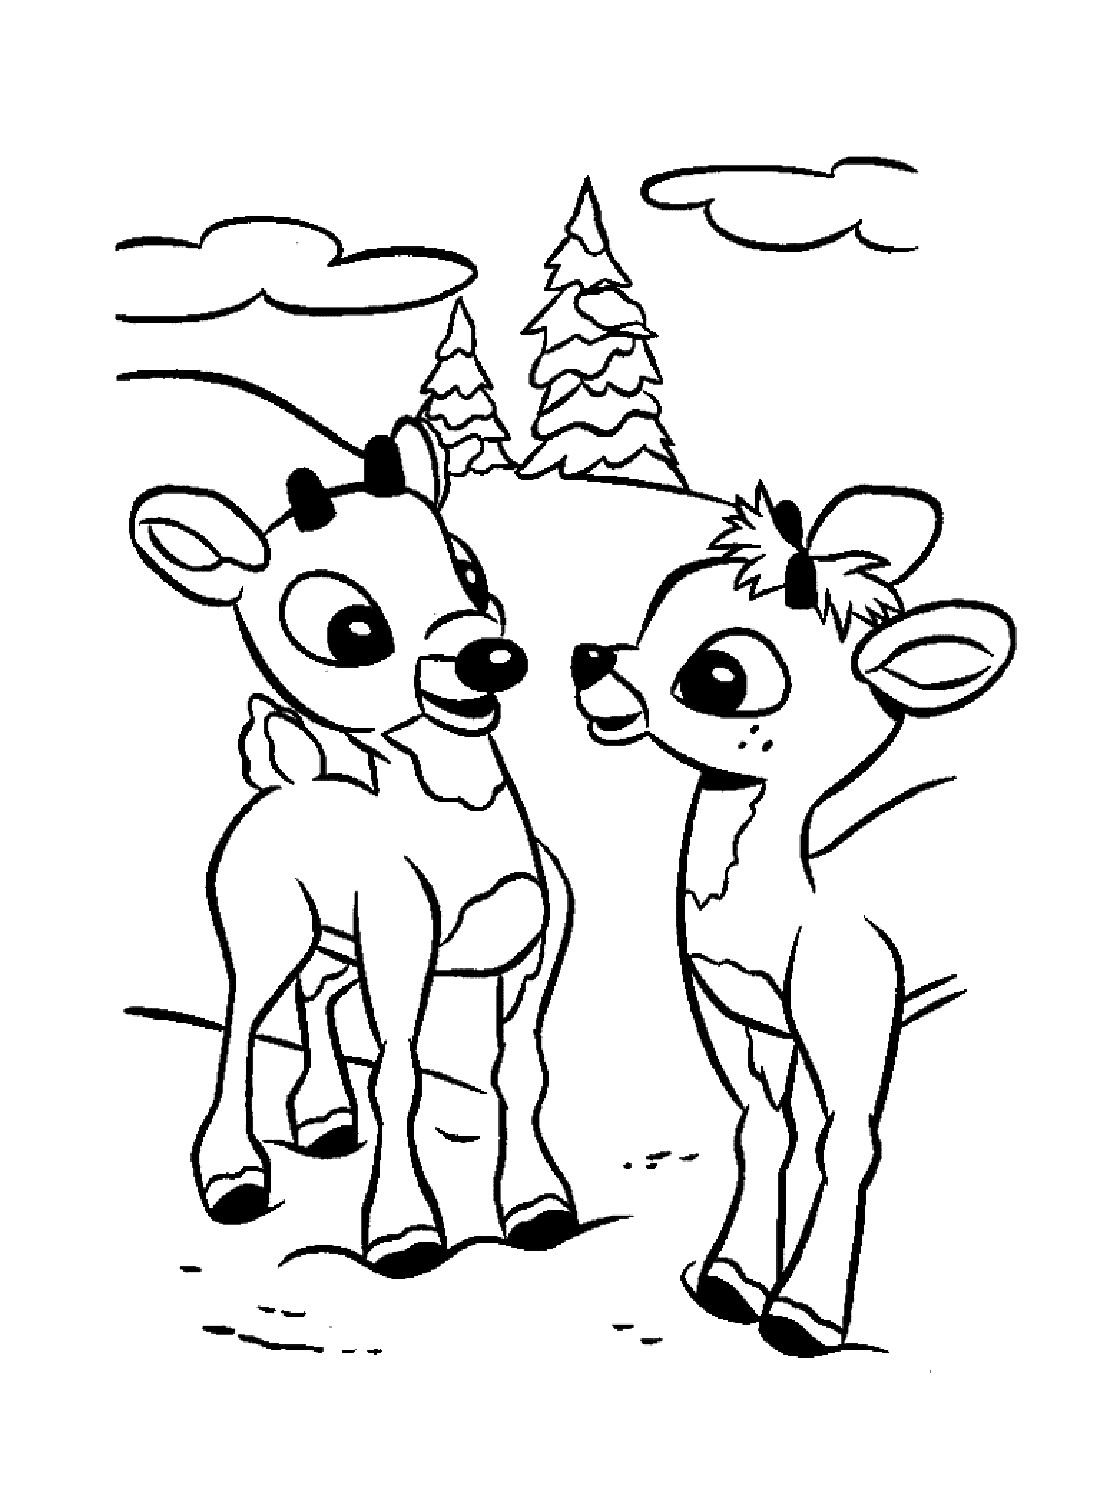 Rudolph et un autre renne de Rudolph